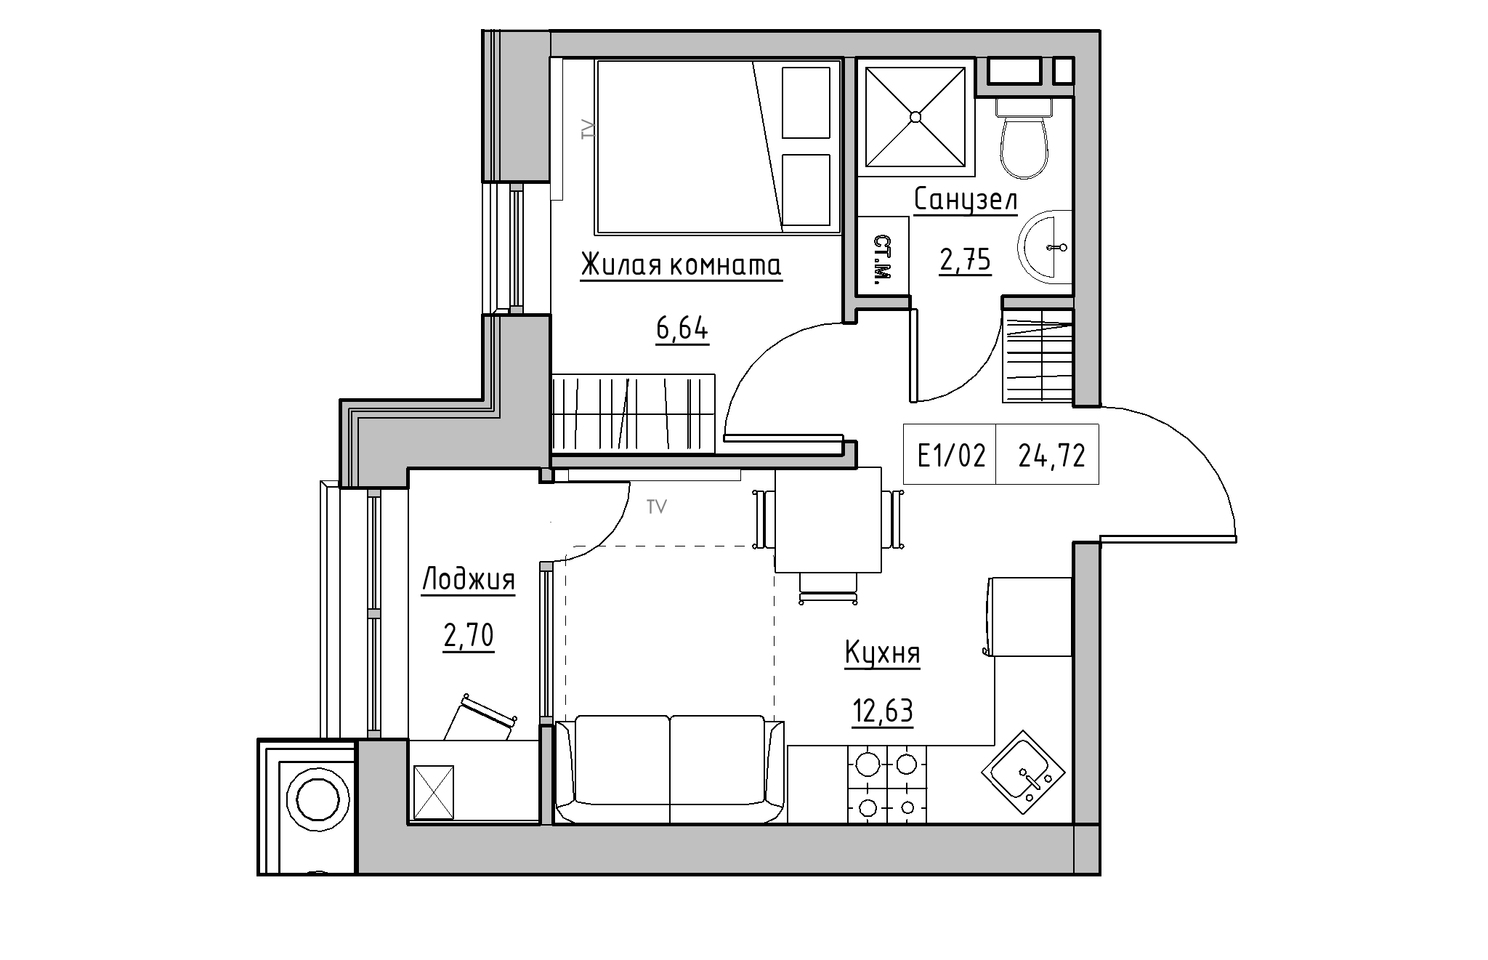 Планування 1-к квартира площею 24.72м2, KS-010-03/0013.